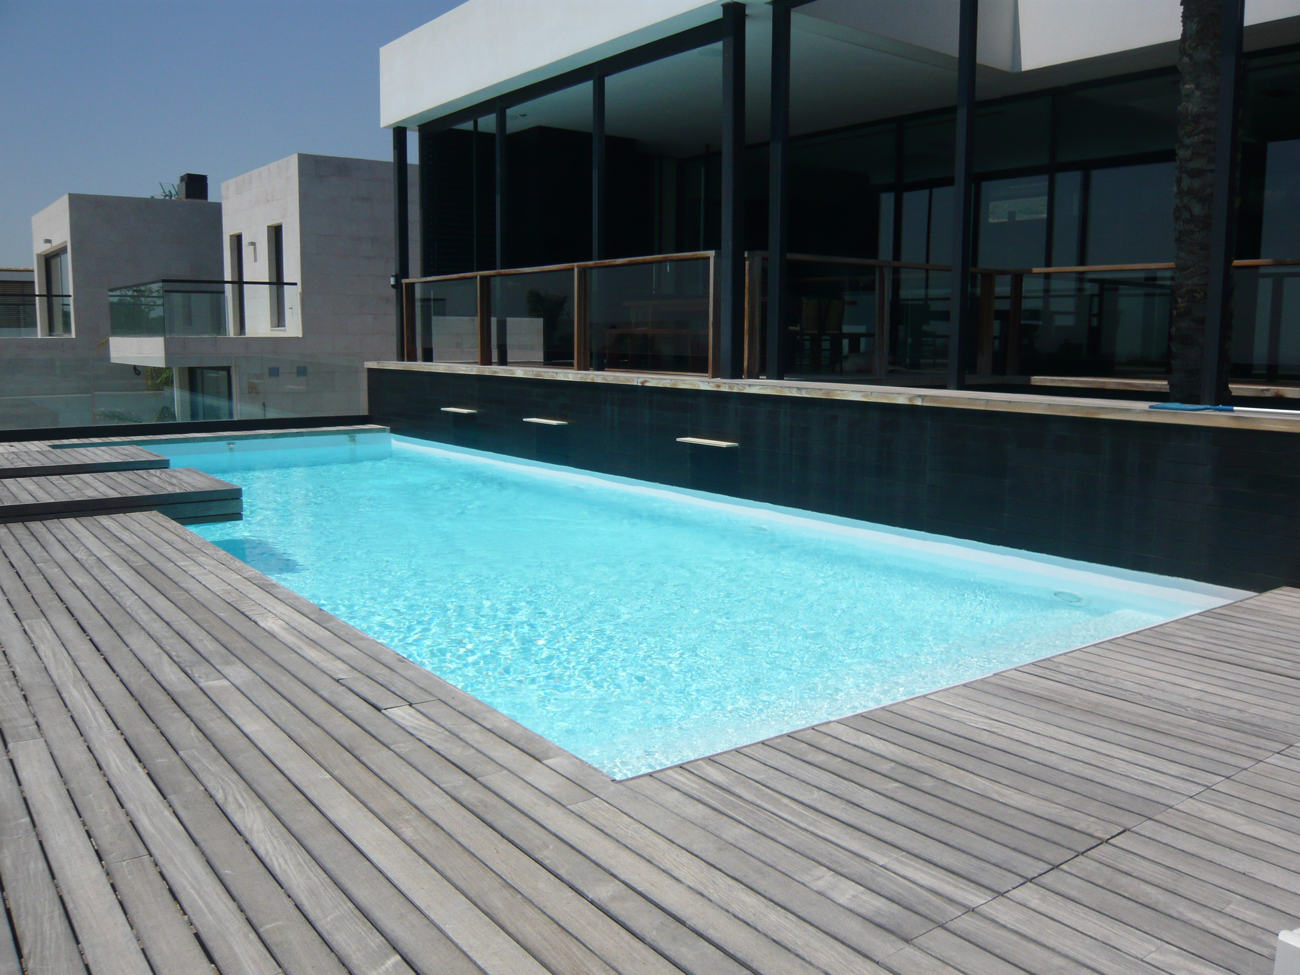 villa Genova con piscina a due piani in microcemento 